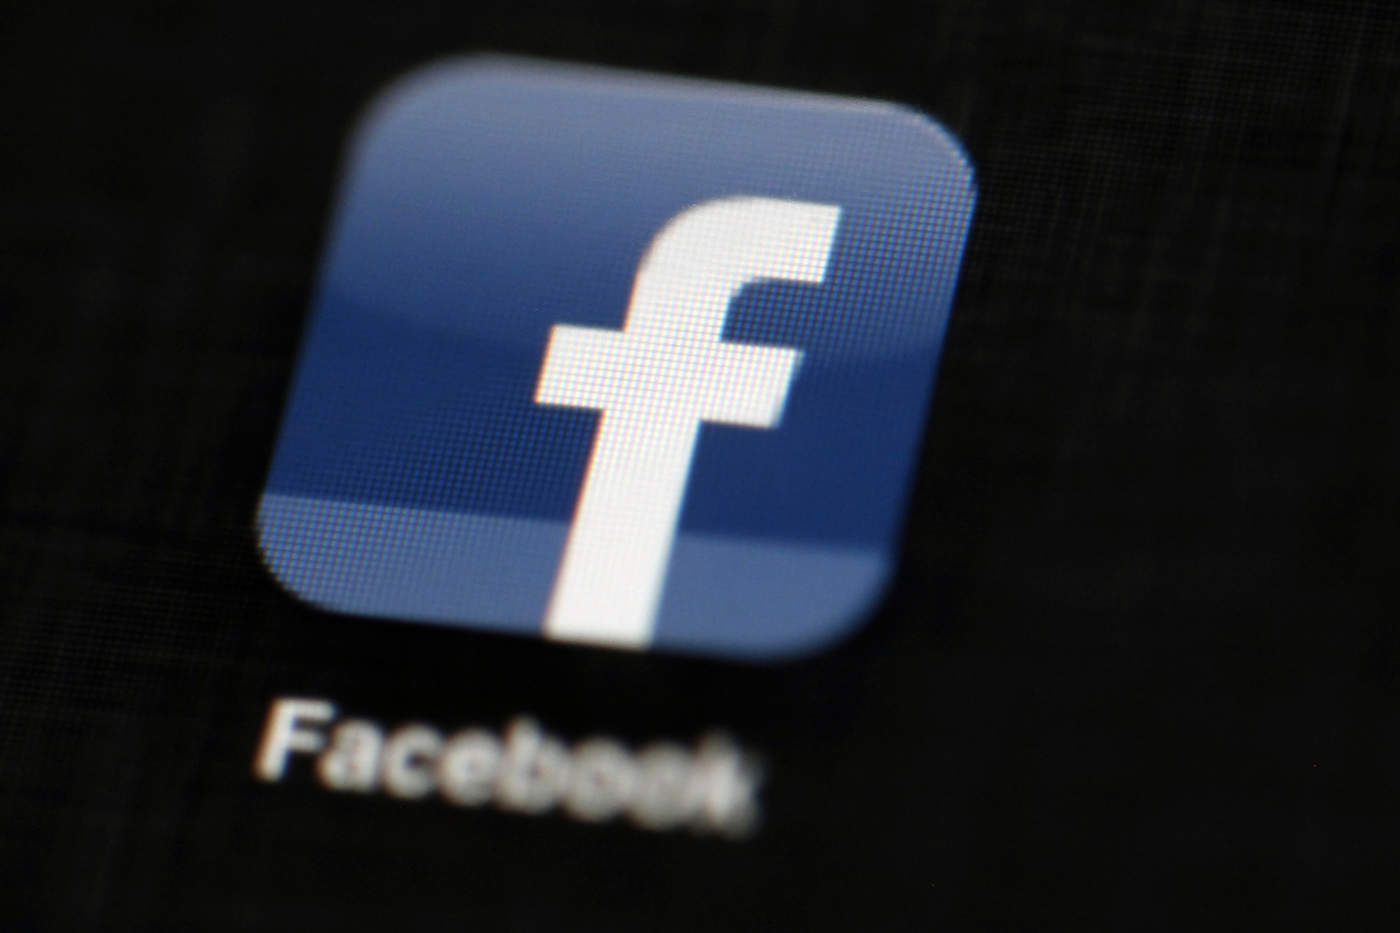 En meses recientes, Facebook ha anunciado dichas purgas con más frecuencia, incluidas algunas vinculadas a grupos en Myanmar, Bangladesh y Rusia. (ARCHIVO)